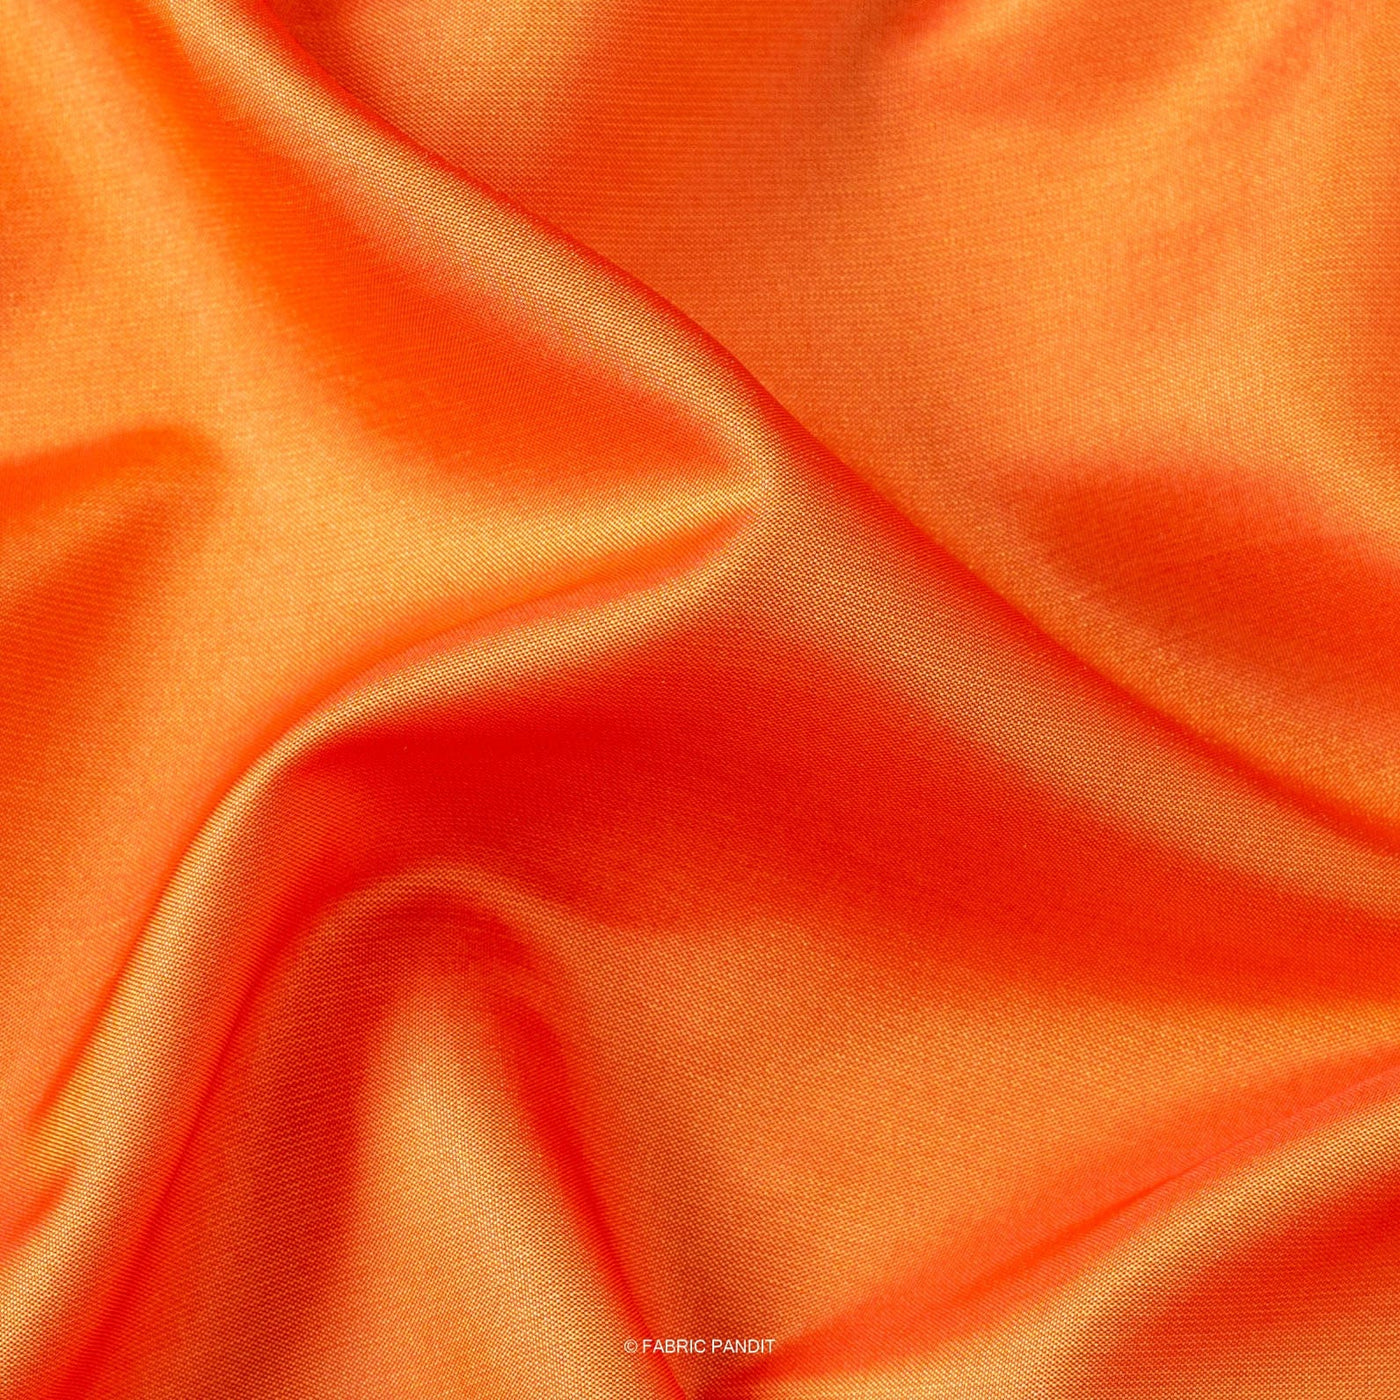 Fabric Pandit Fabric Golden Orange Plain Premium Dual Tone Paper Silk Fabric (Width 44 Inches)